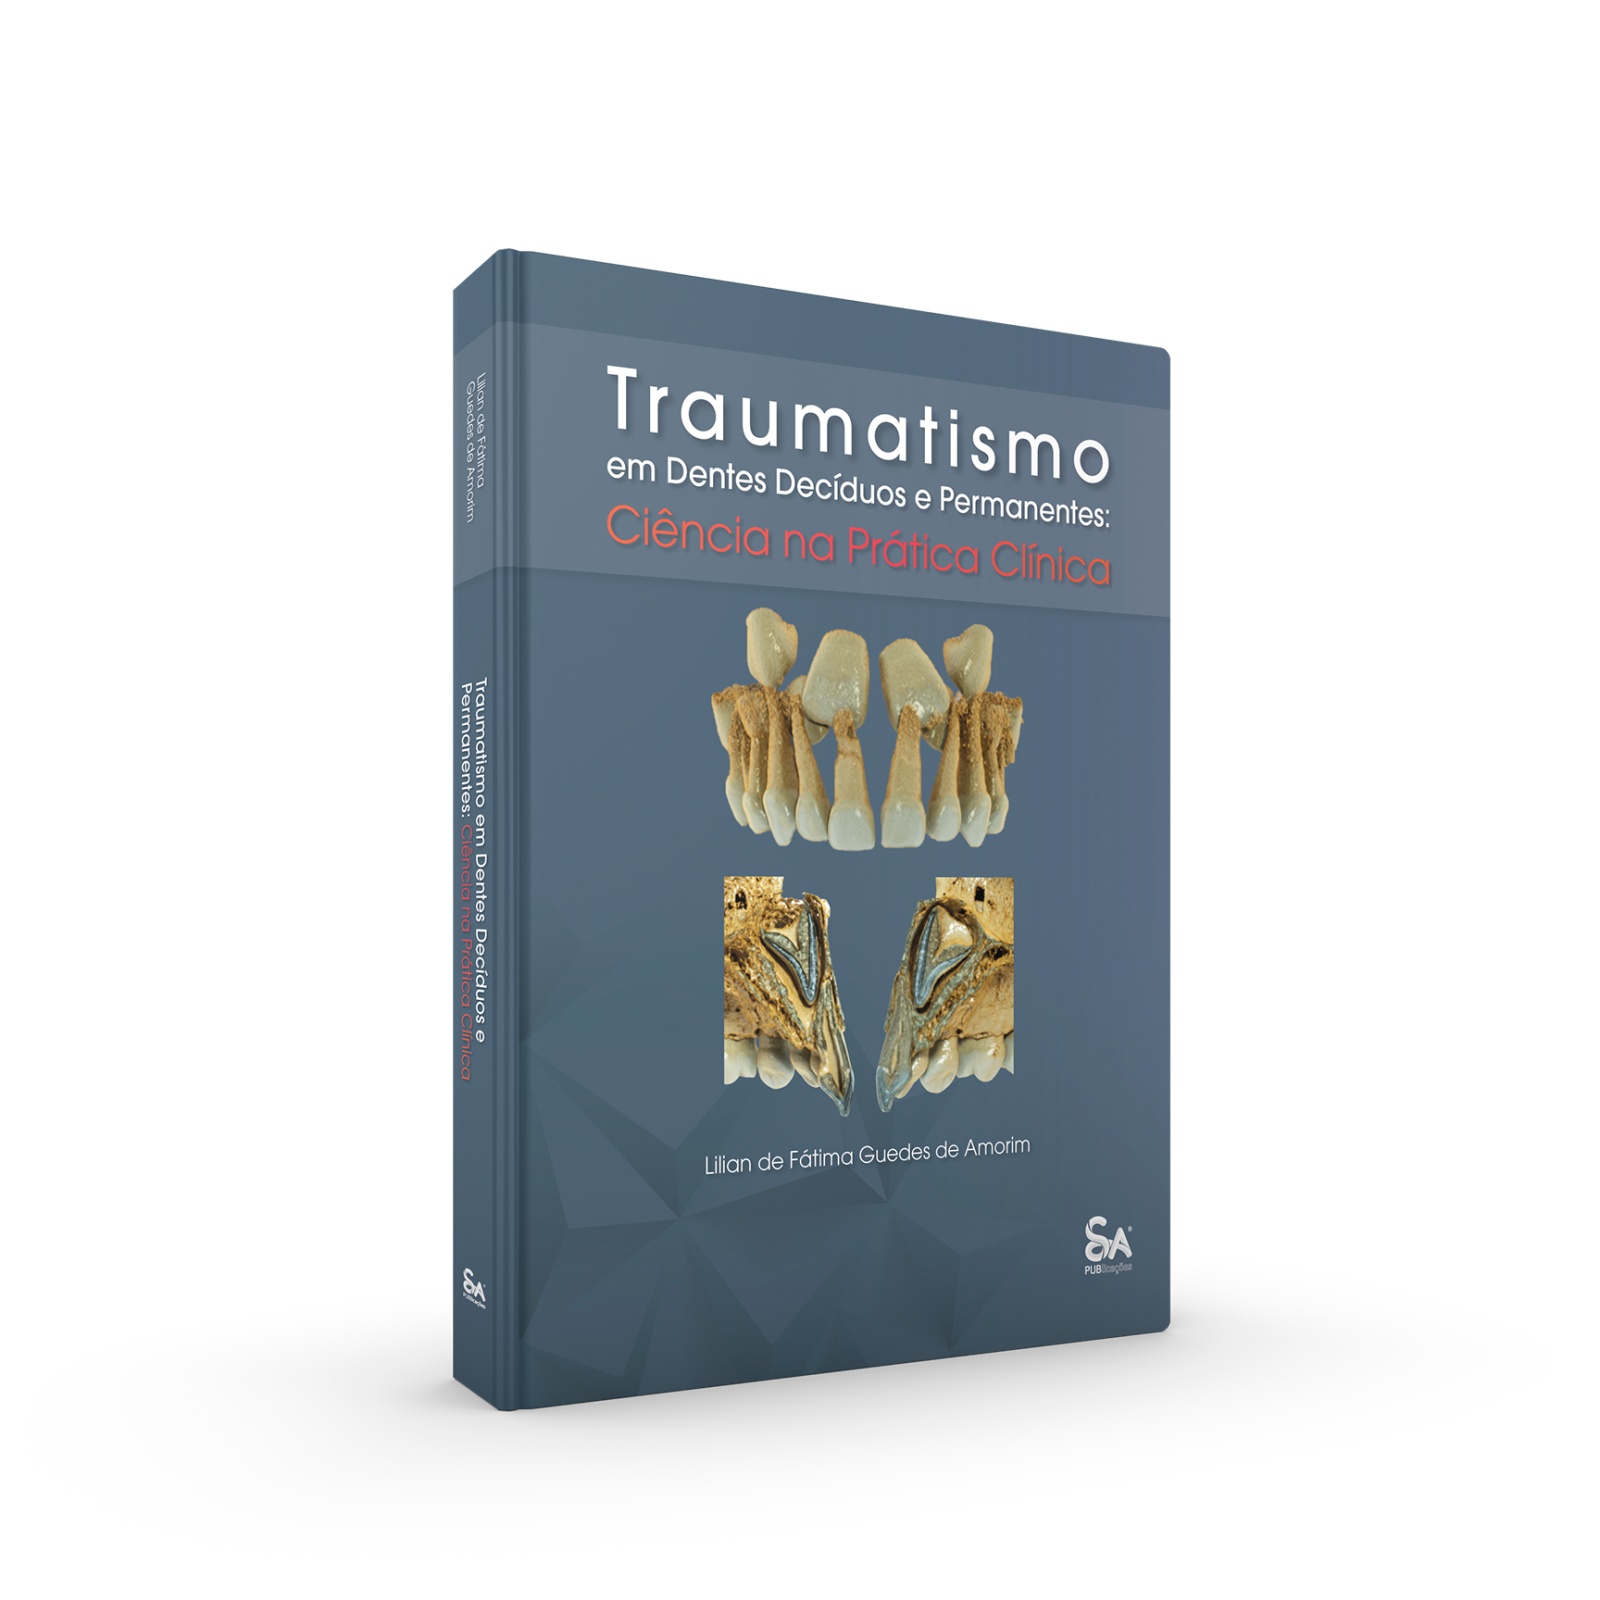 Traumatismo em Dentes Decíduos e Permanentes: Ciência na Prática Clínica